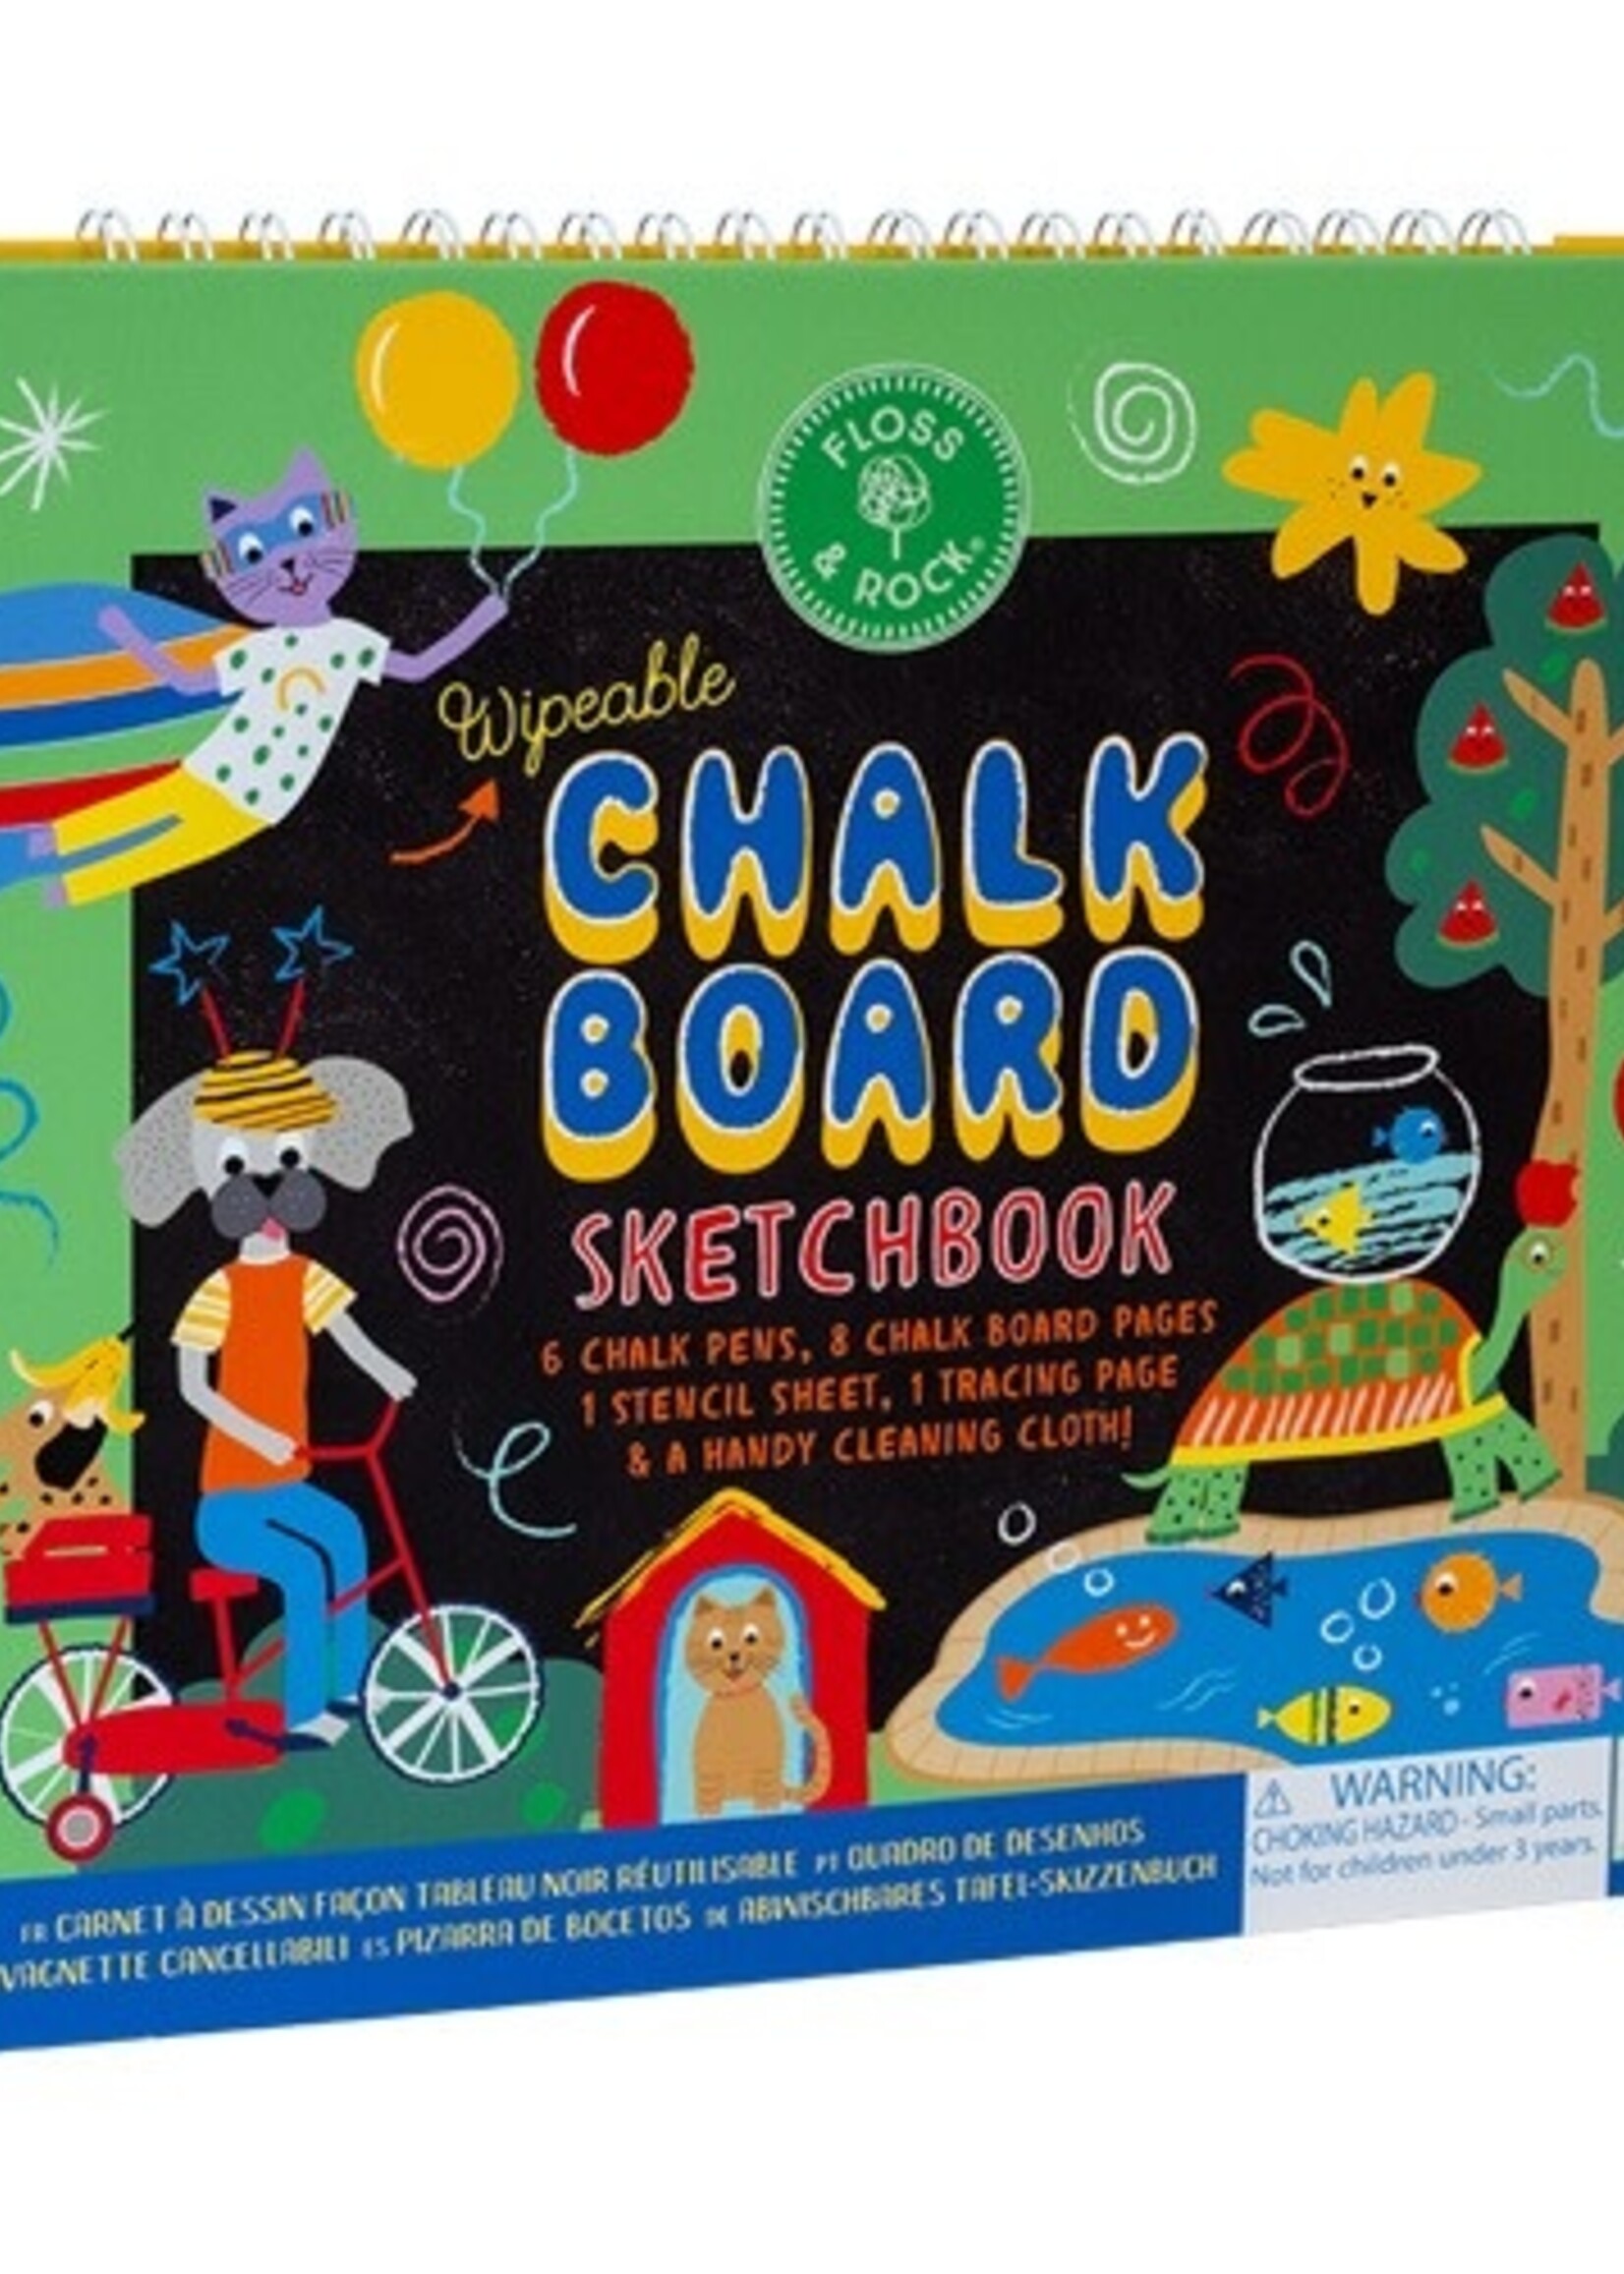 Floss & Rock Chalkboard Sketchbook